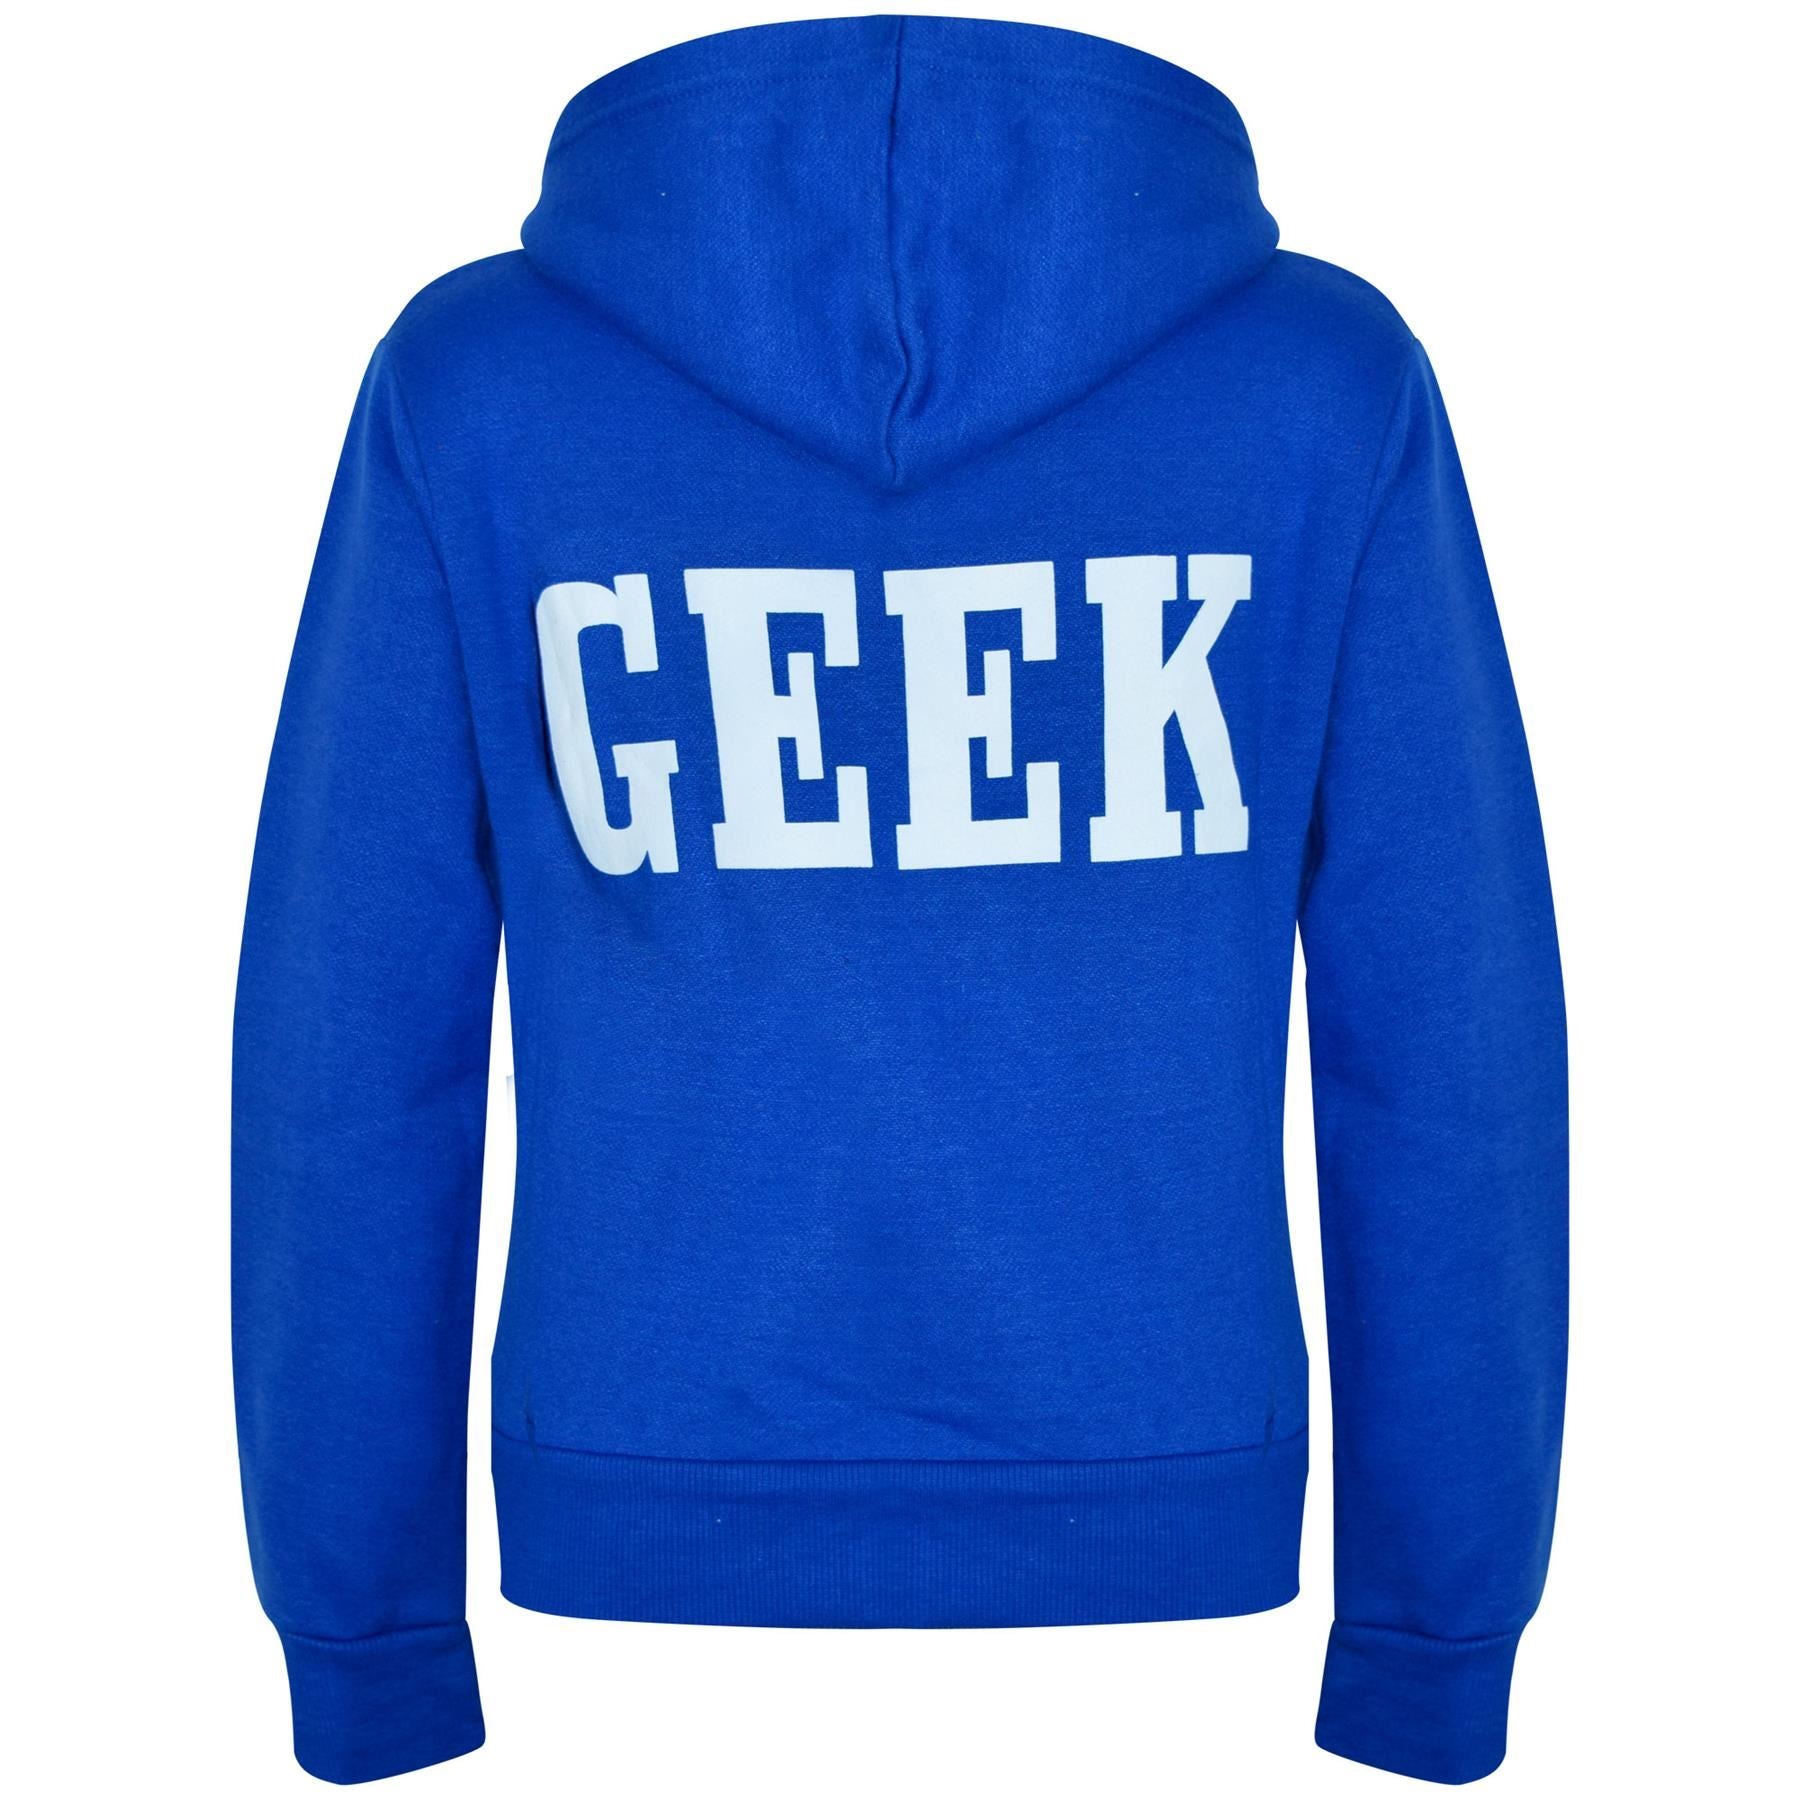 Kids Girls Boys Geek Print Fleece Hooded Zipper